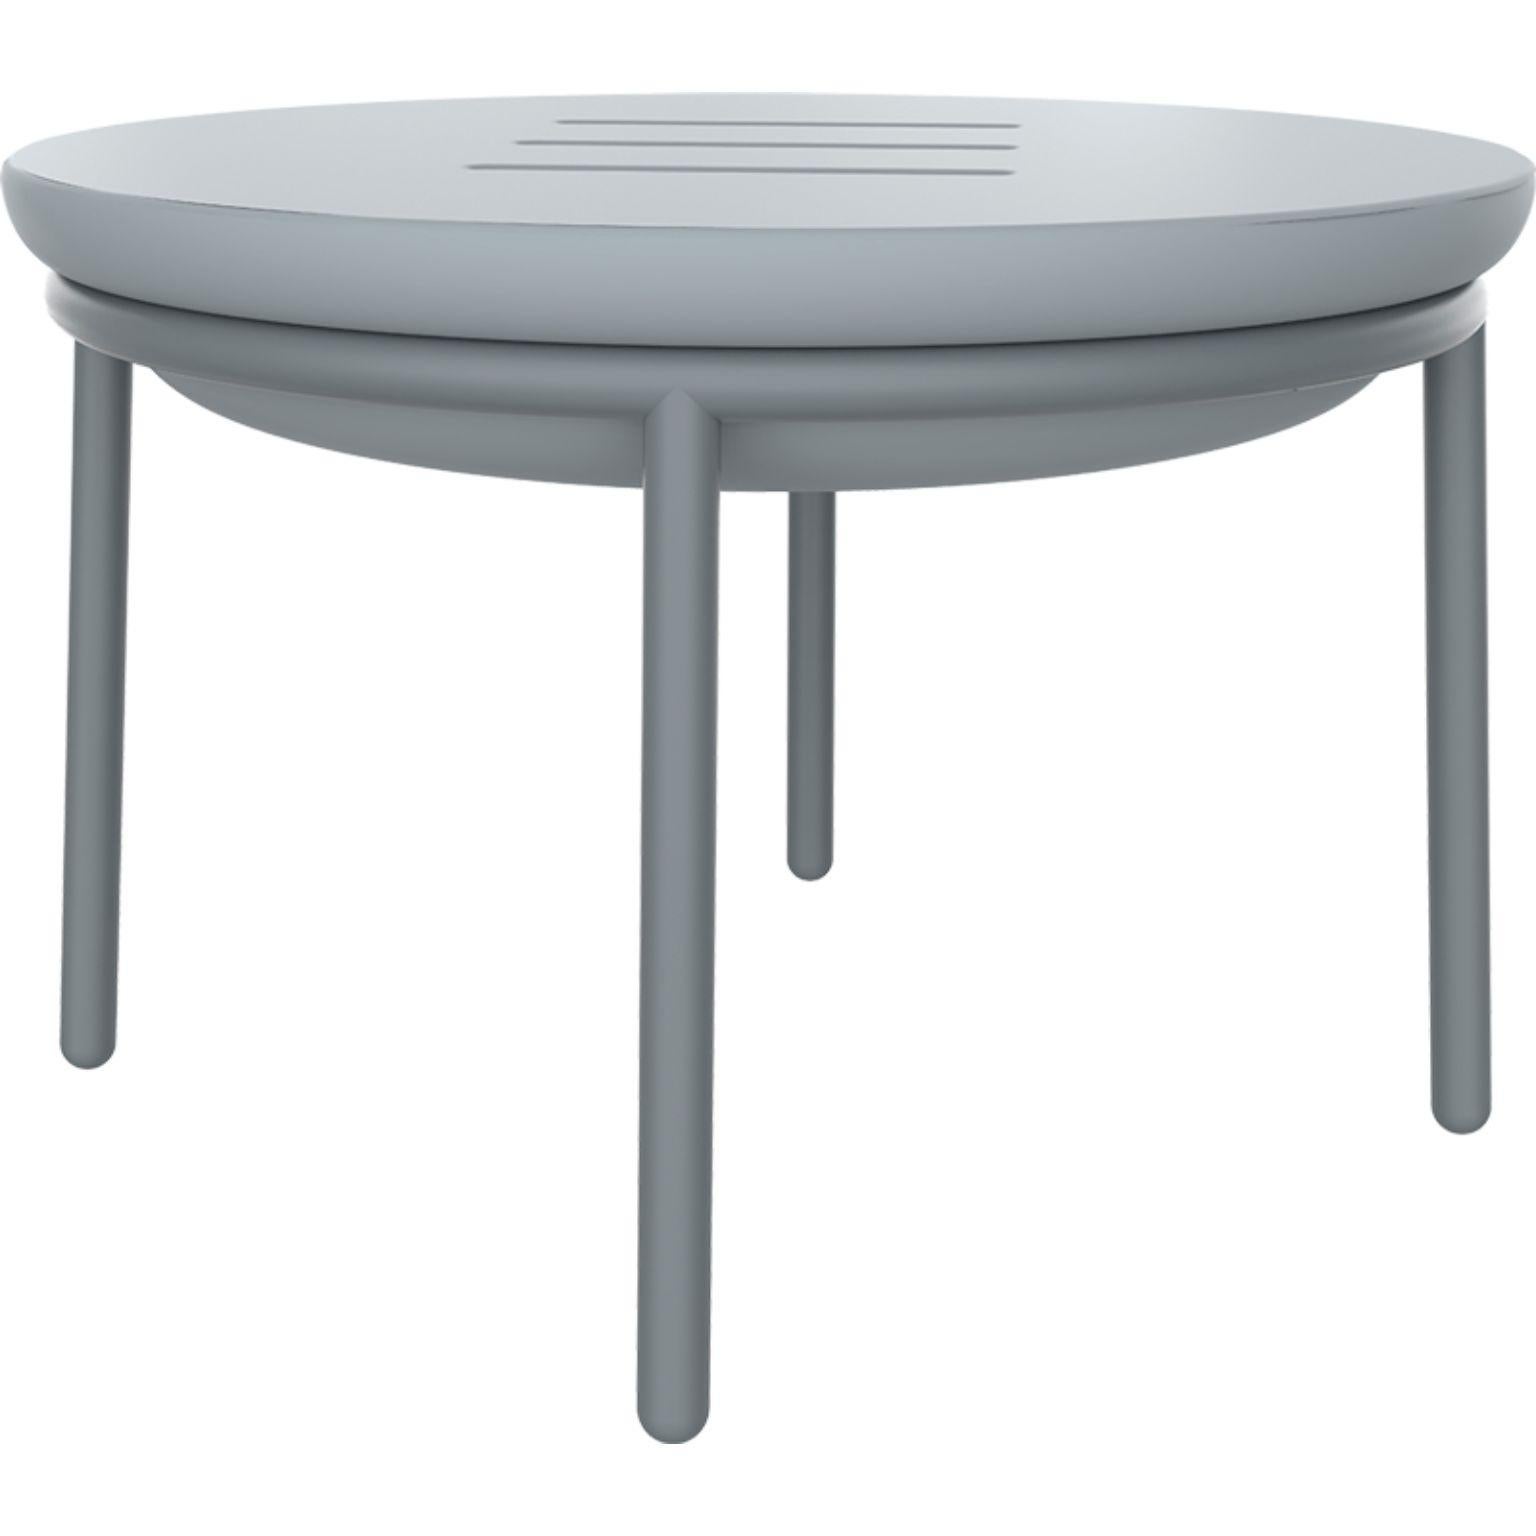 Niedriger Tisch Lace grey 60 von MOWEE
Abmessungen: Ø60 x H41 cm
MATERIAL: Polyethylen und rostfreier Stahl.
Gewicht: 6,2 kg.
Auch in verschiedenen Farben und Ausführungen (lackiert) erhältlich.

Lace ist eine Kollektion von Möbeln, die im